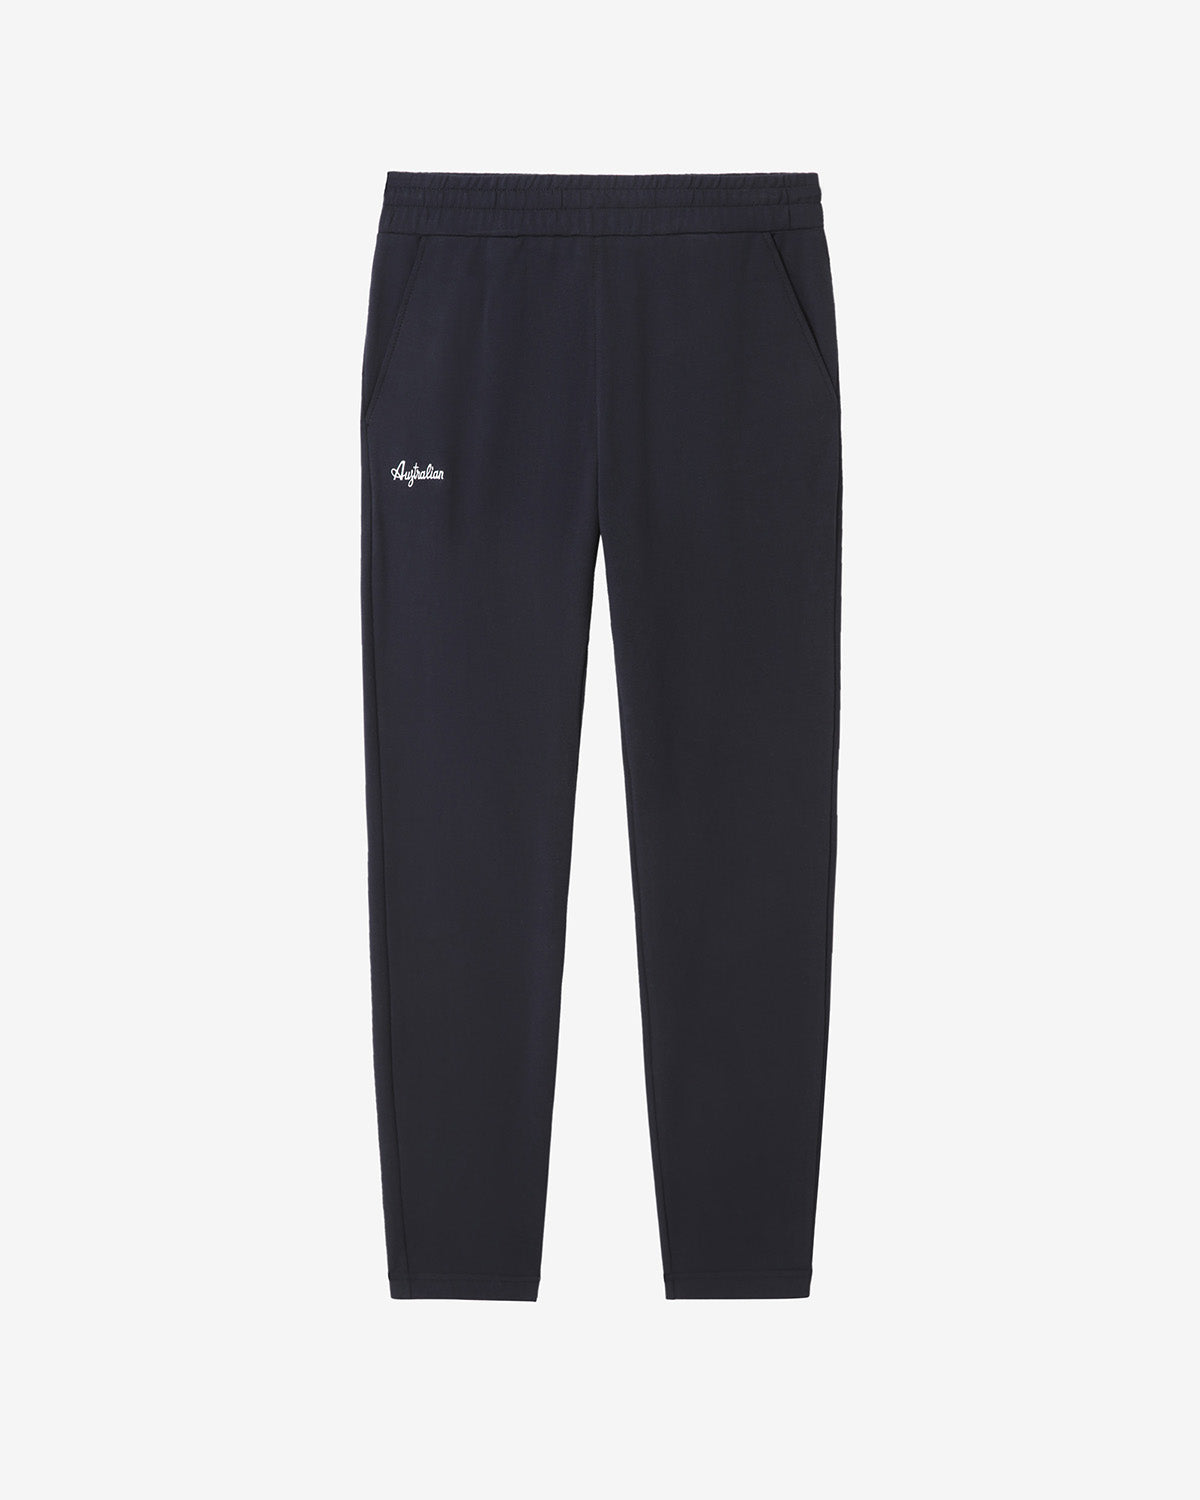 Elastic Fleece Pant: Australian Sportswear